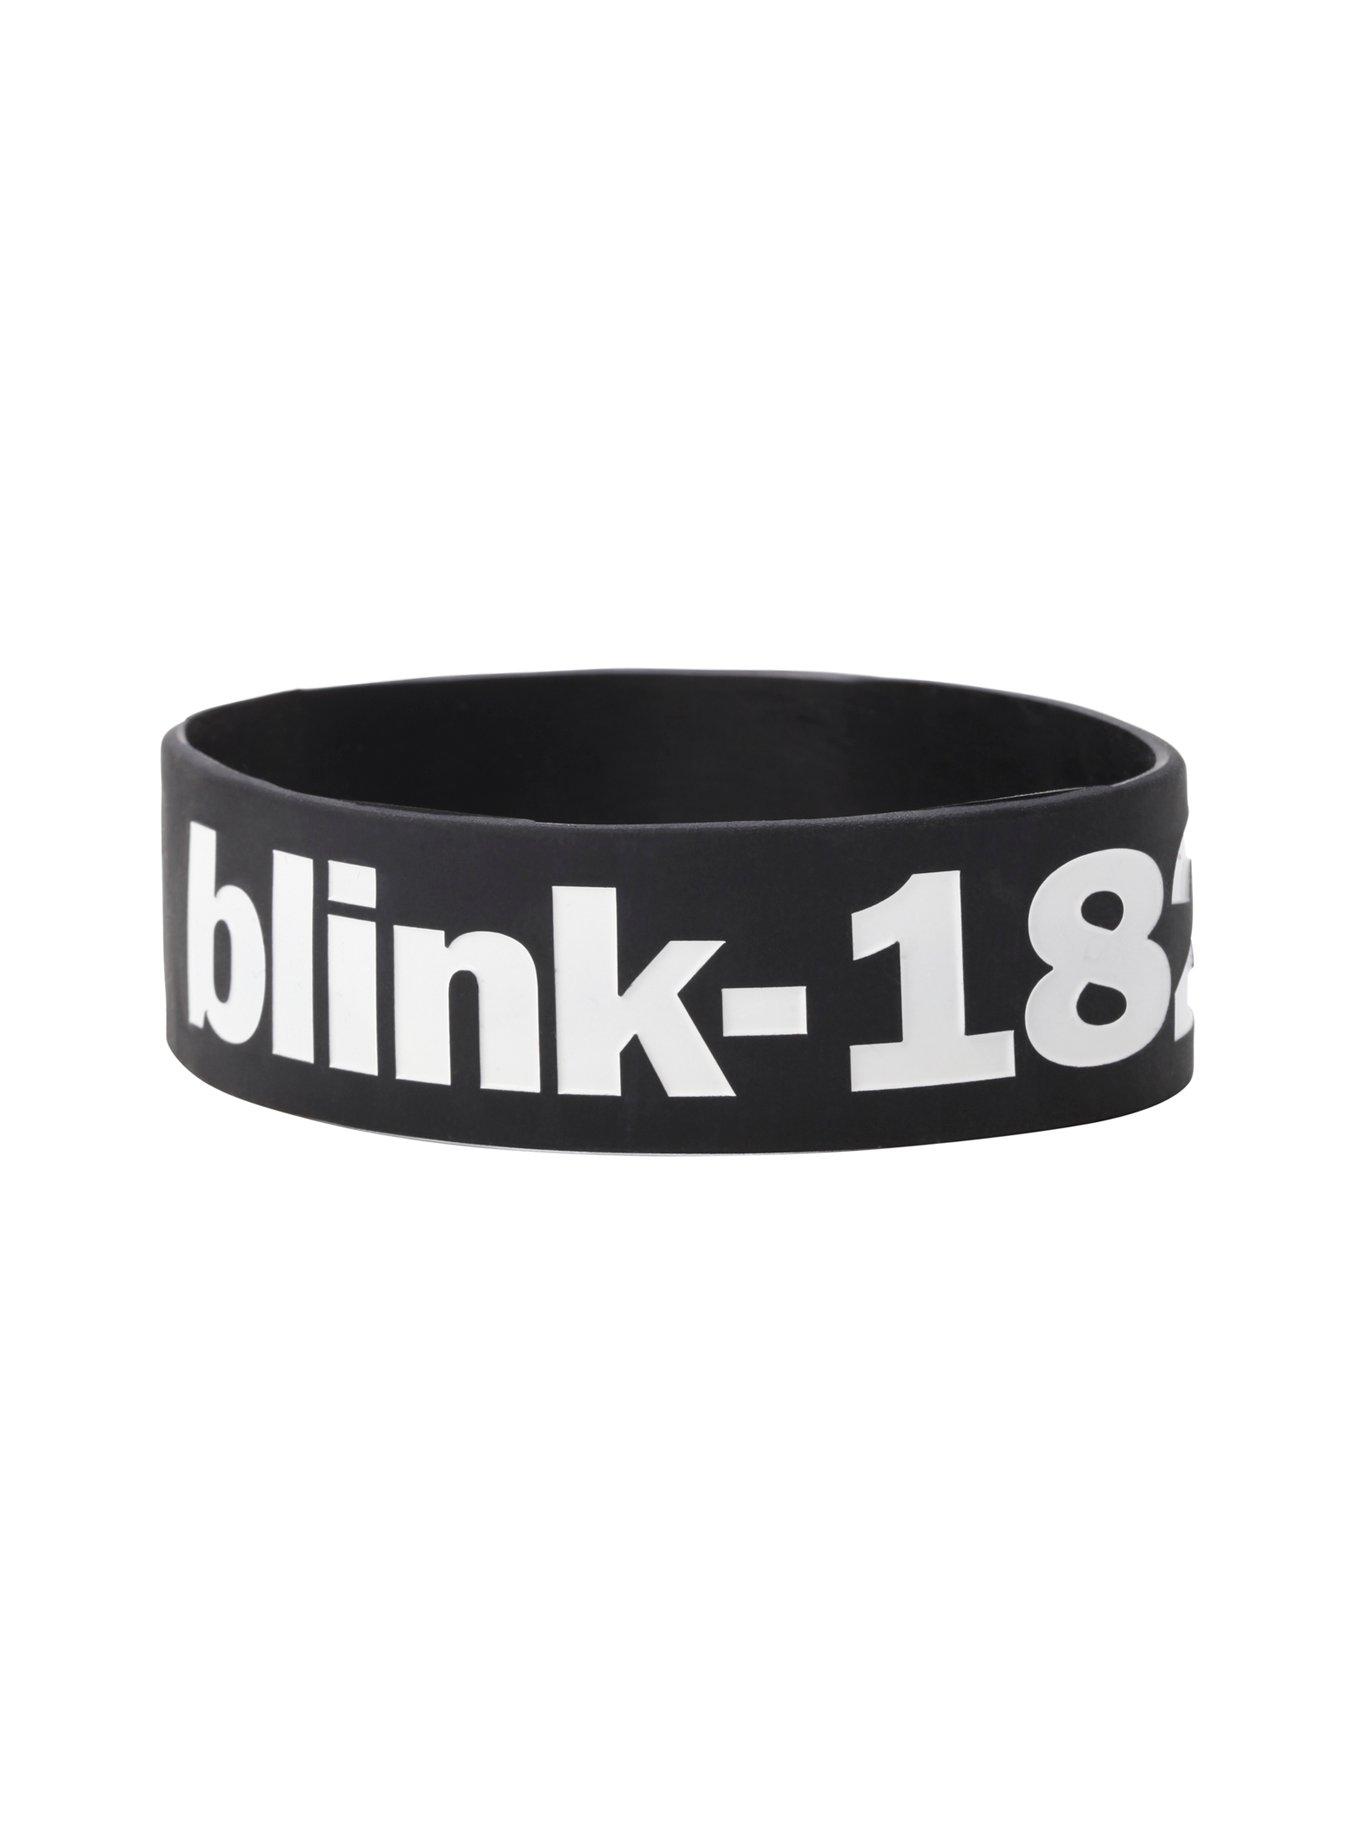 Blink-182 Symbols Rubber Bracelet, , hi-res